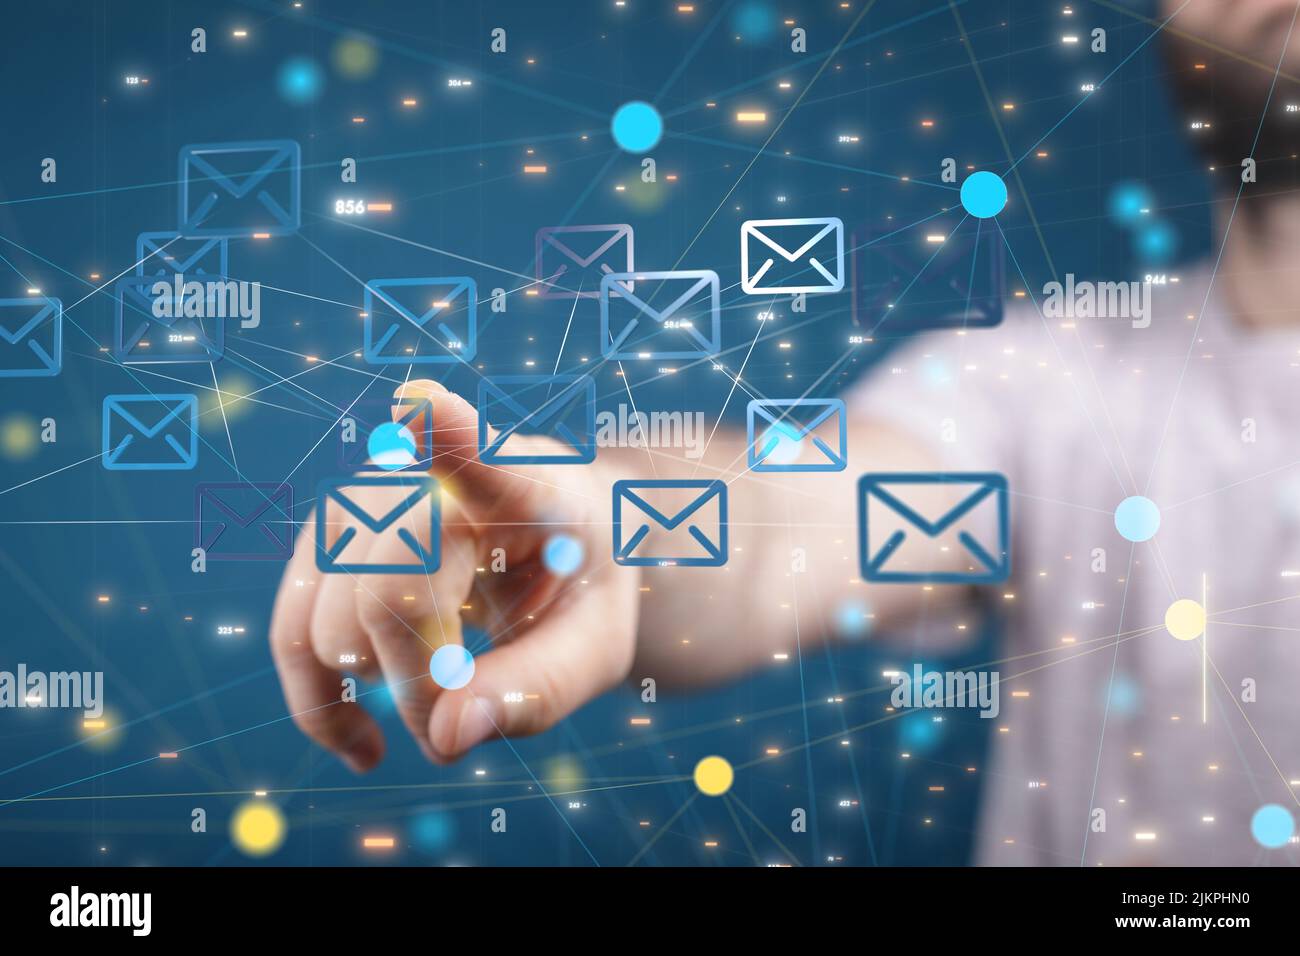 Eine Nahaufnahme einer Hand, die 3D gerenderte E-Mail-Symbole auf einem blauen Hintergrund berührt, ein Netzwerkkonzept Stockfoto